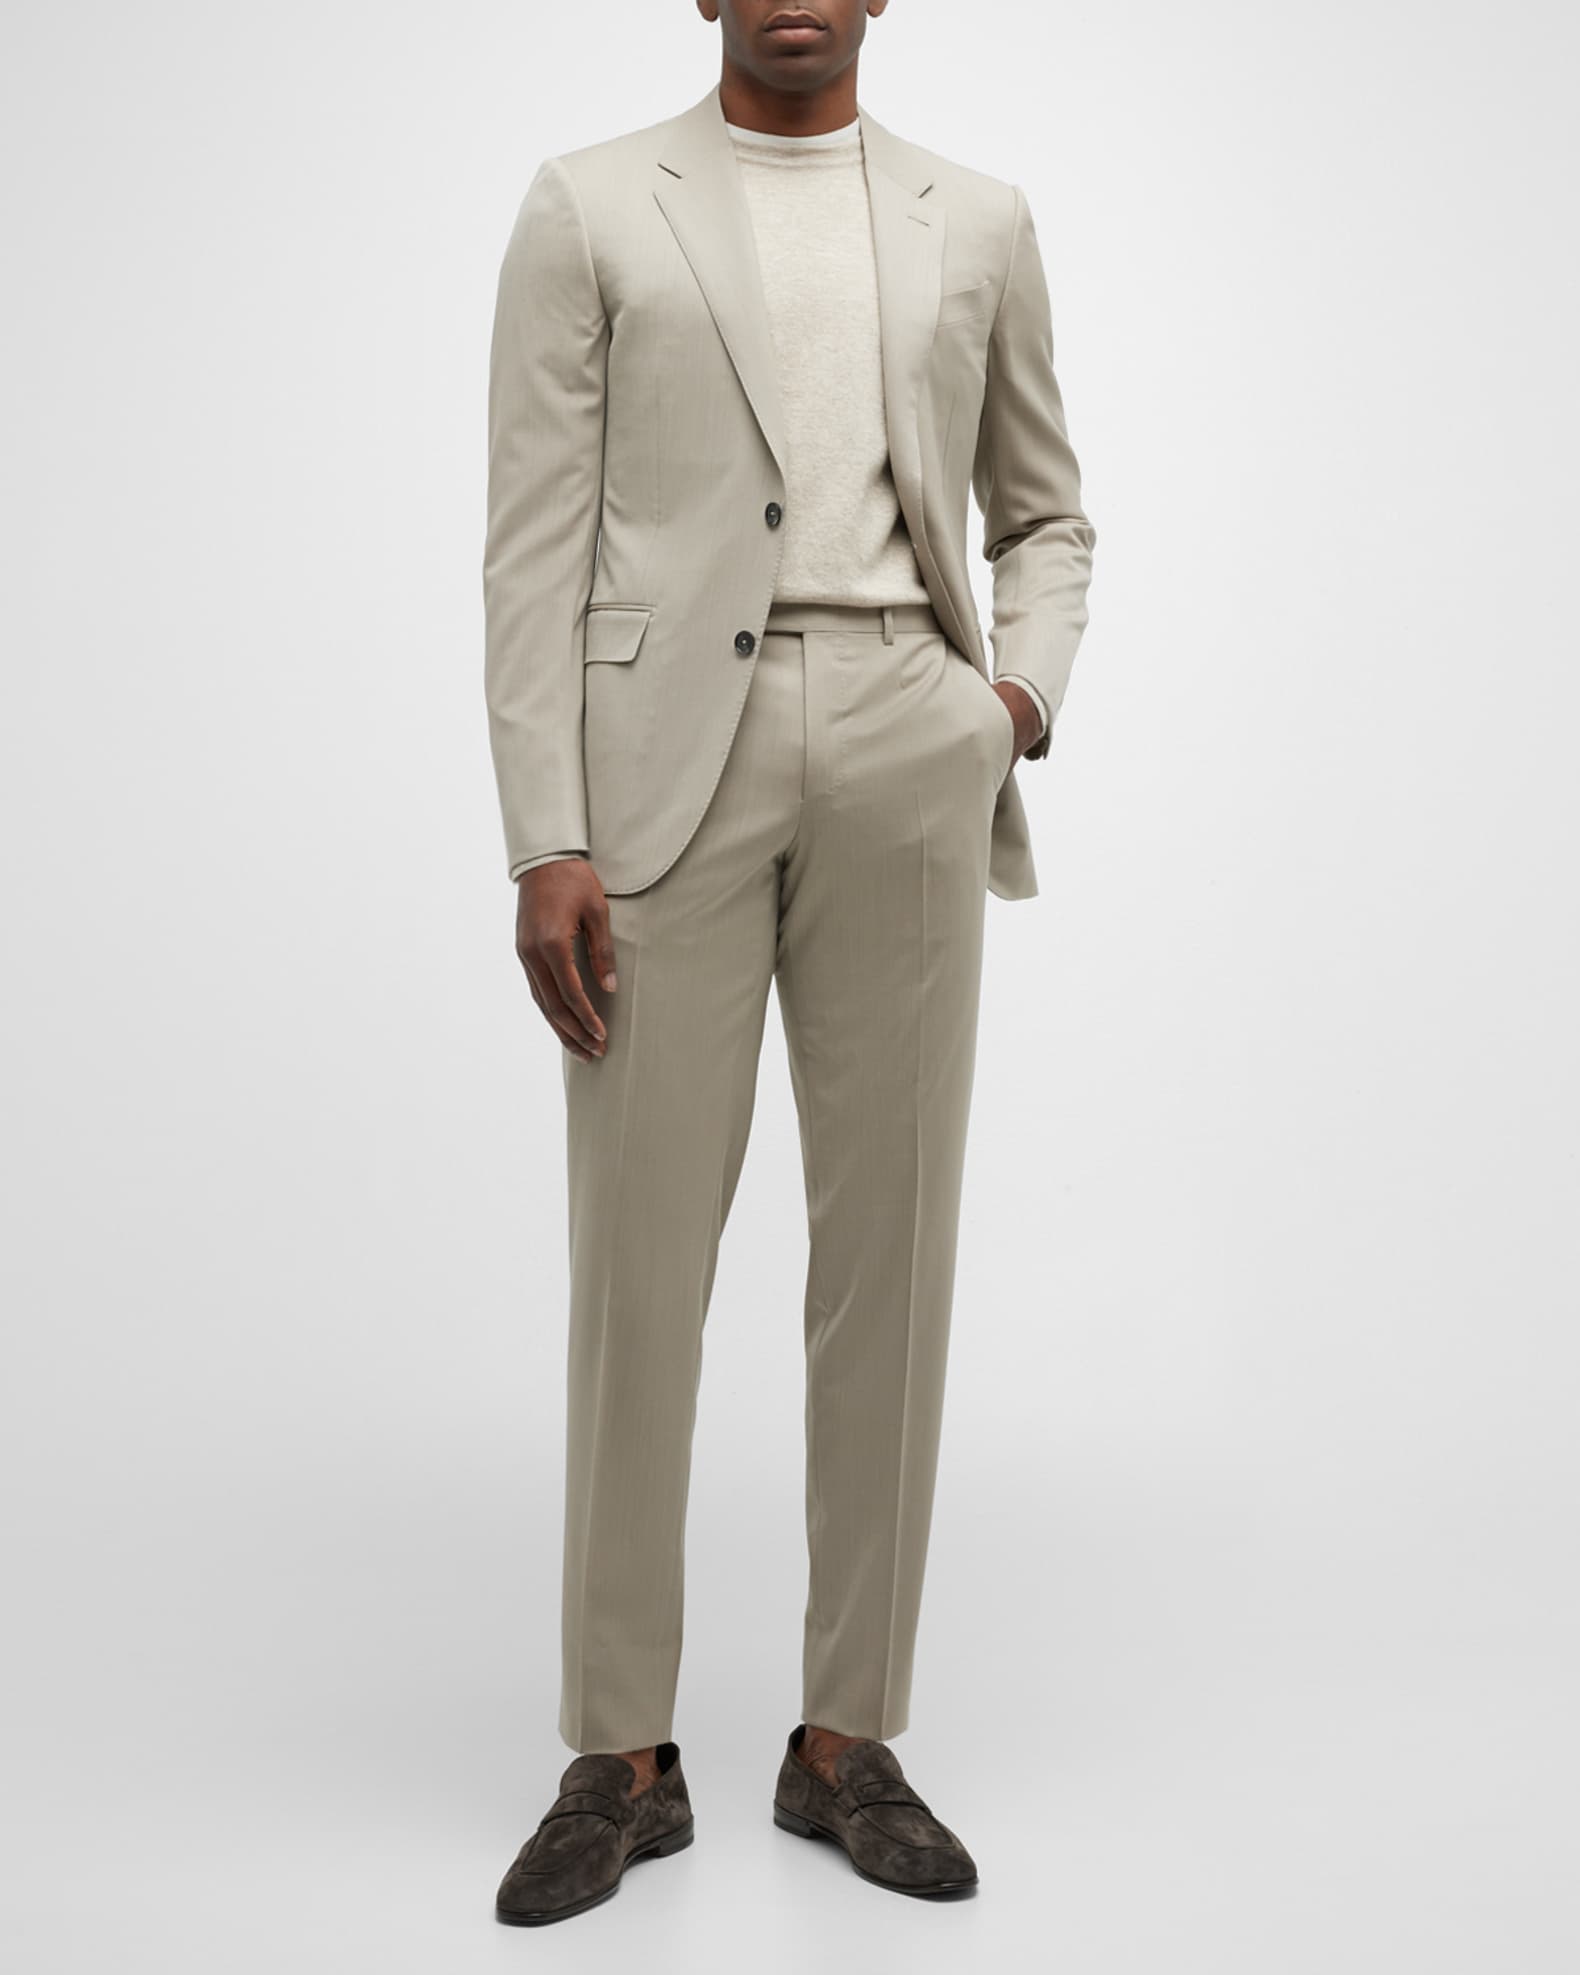 ZEGNA Men's Solid Wool Twill Suit | Neiman Marcus